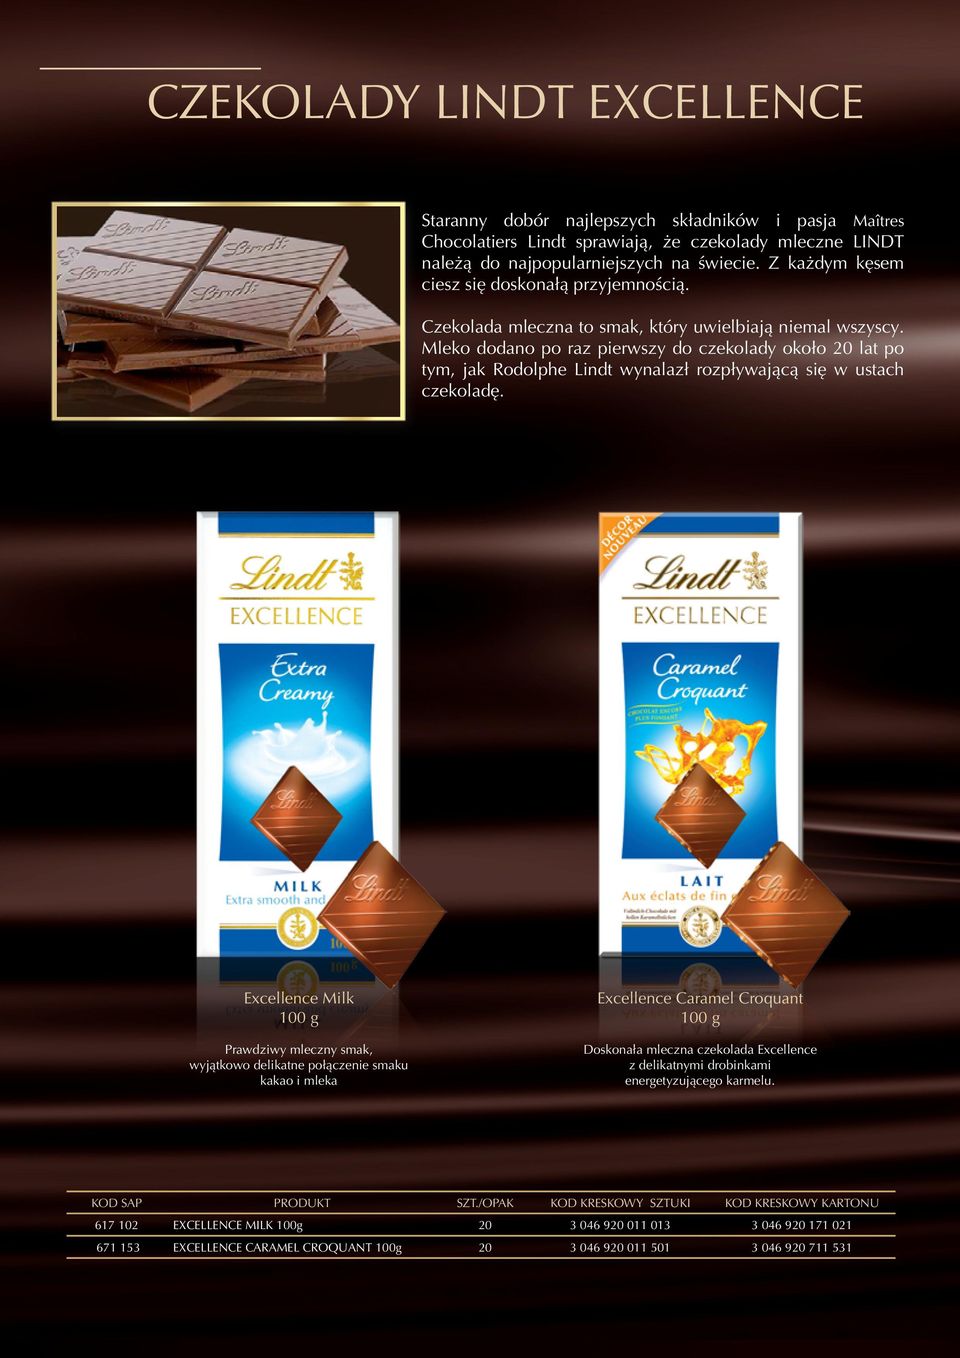 Mleko dodano po raz pierwszy do czekolady około 20 lat po tym, jak Rodolphe Lindt wynalazł rozpływającą się w ustach czekoladę.